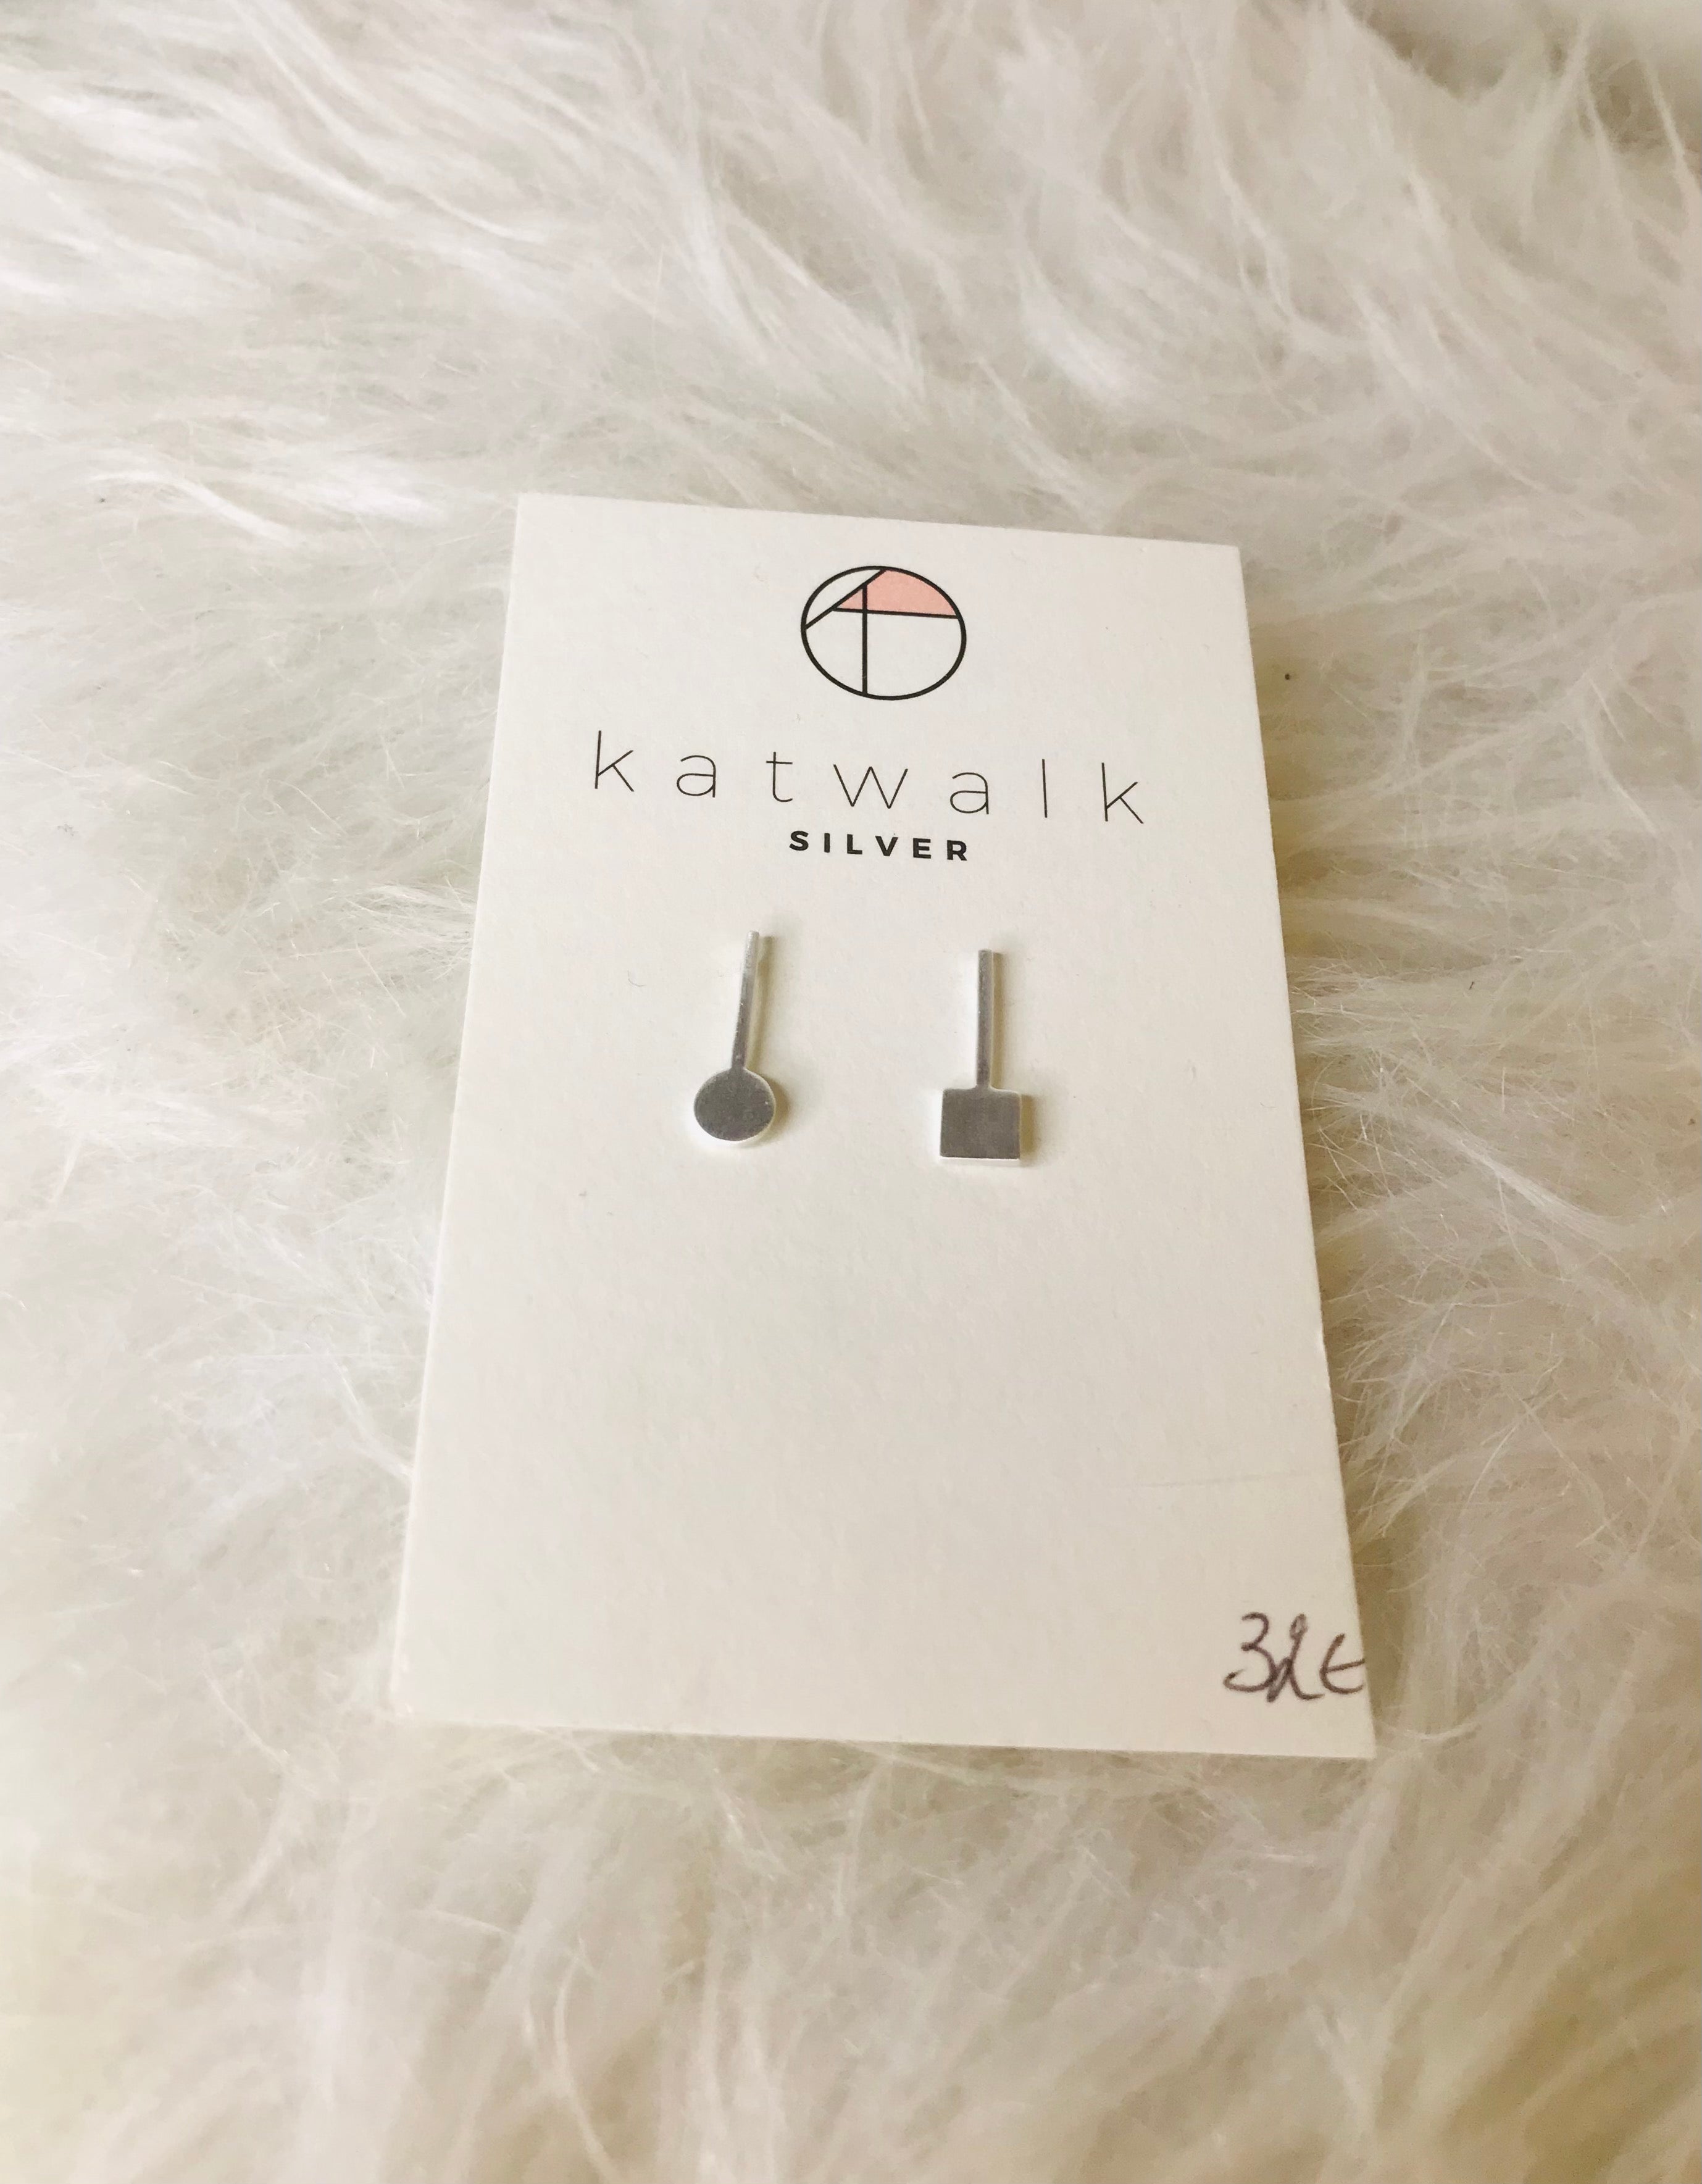 katwalk silver - earrings